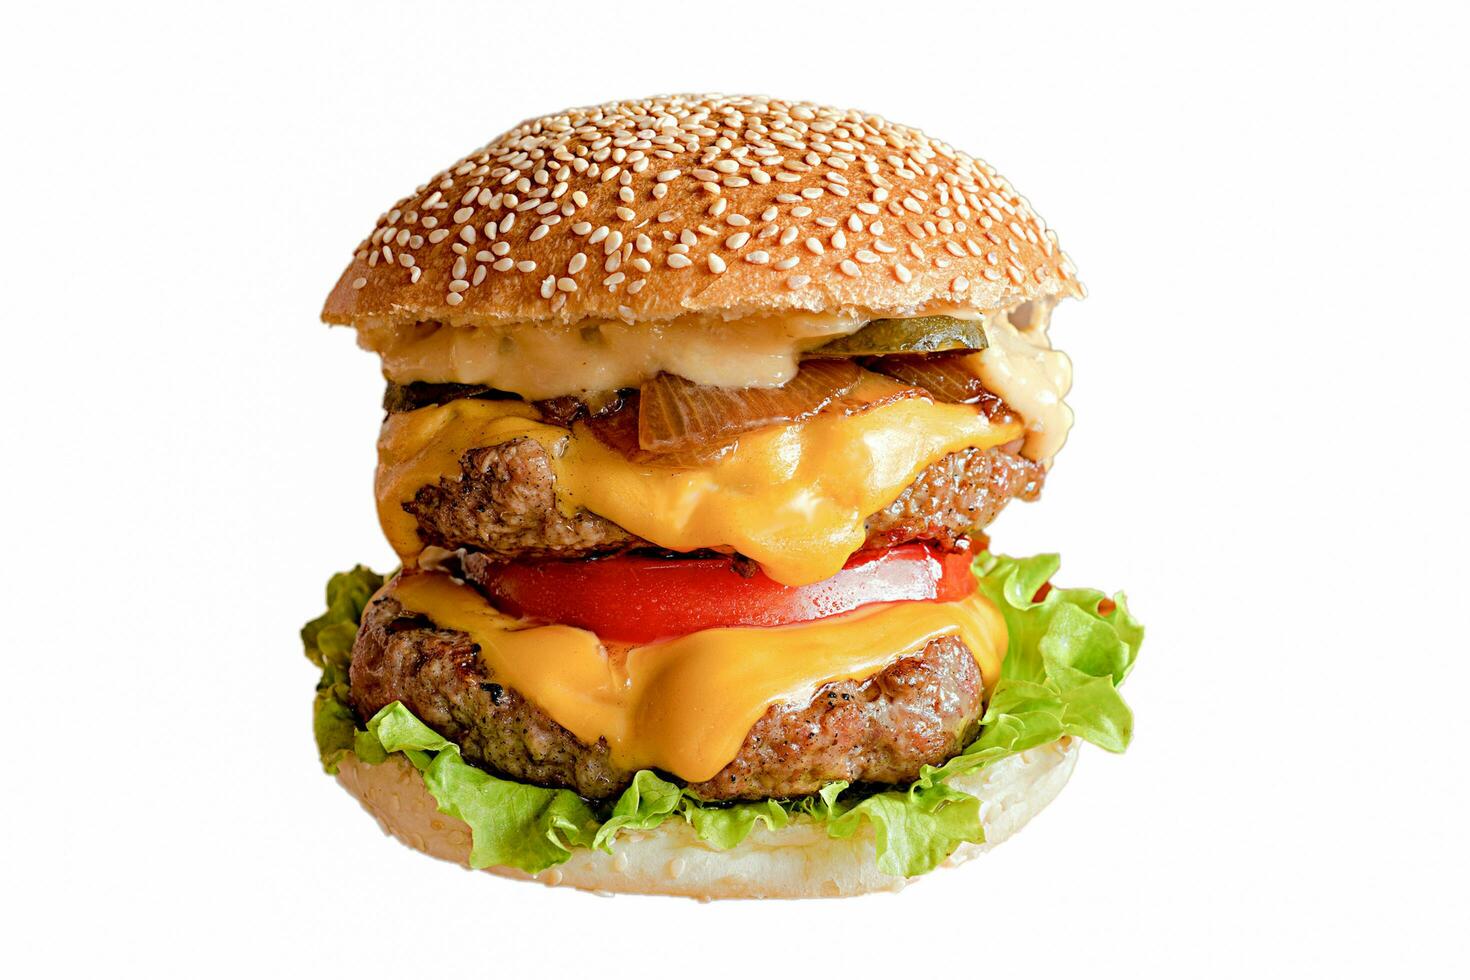 brommen hamburger, kaas hamburger, groente hamburger, Fast food, rundvlees hamburger, ui, brood, ketchup foto